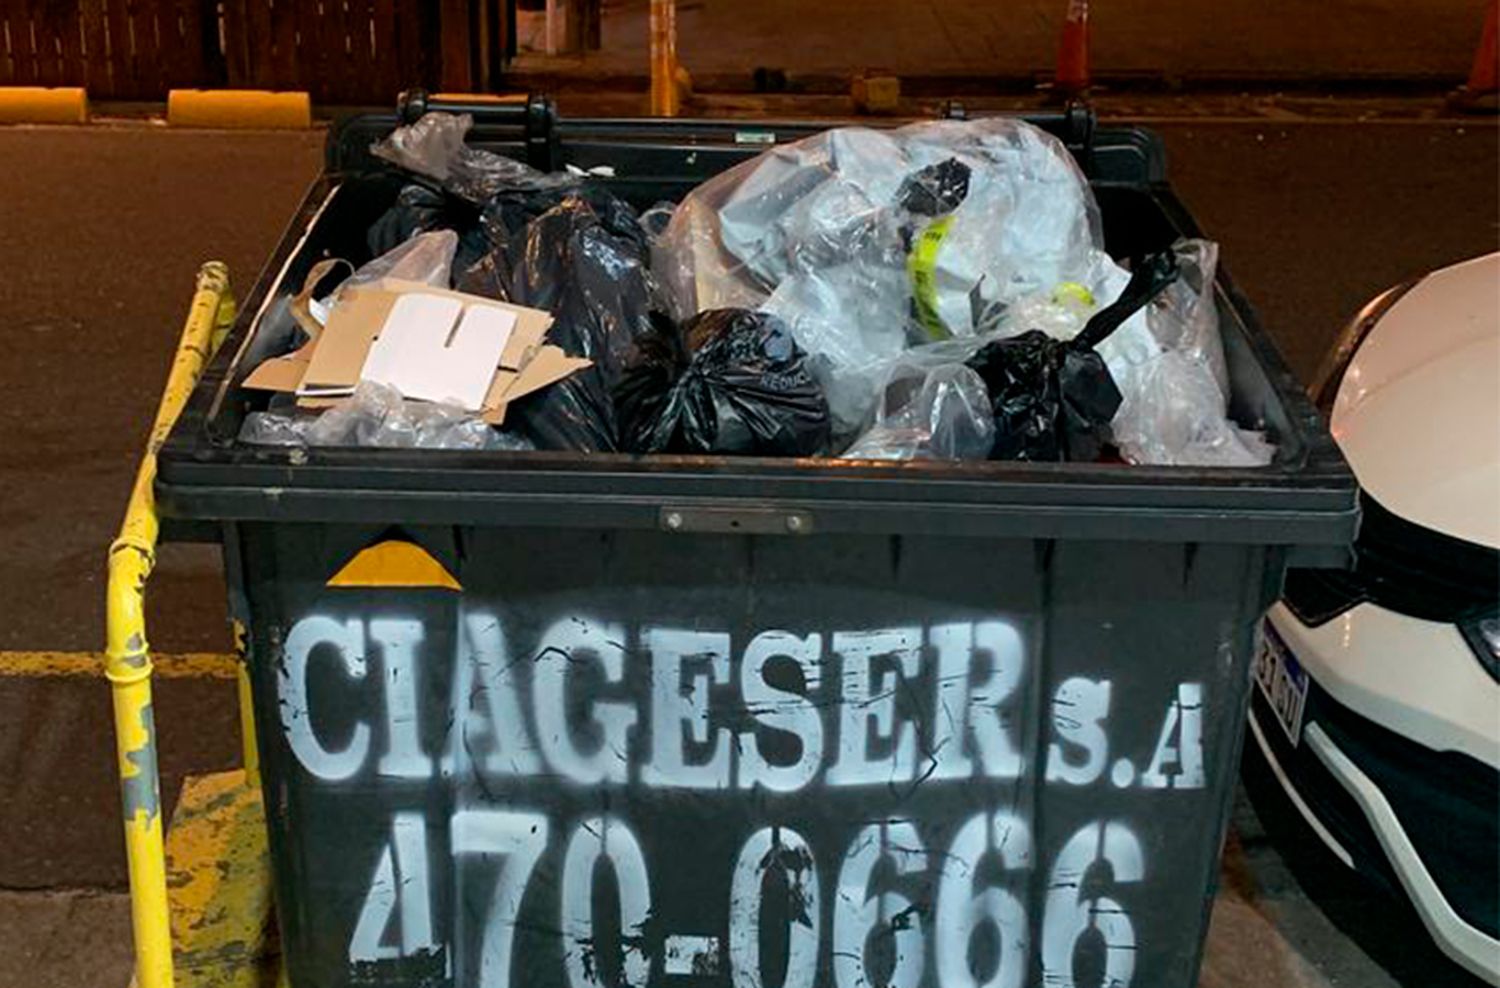 Ciageser, detrás del monopolio del millonario negocio de la basura en Mar del Plata